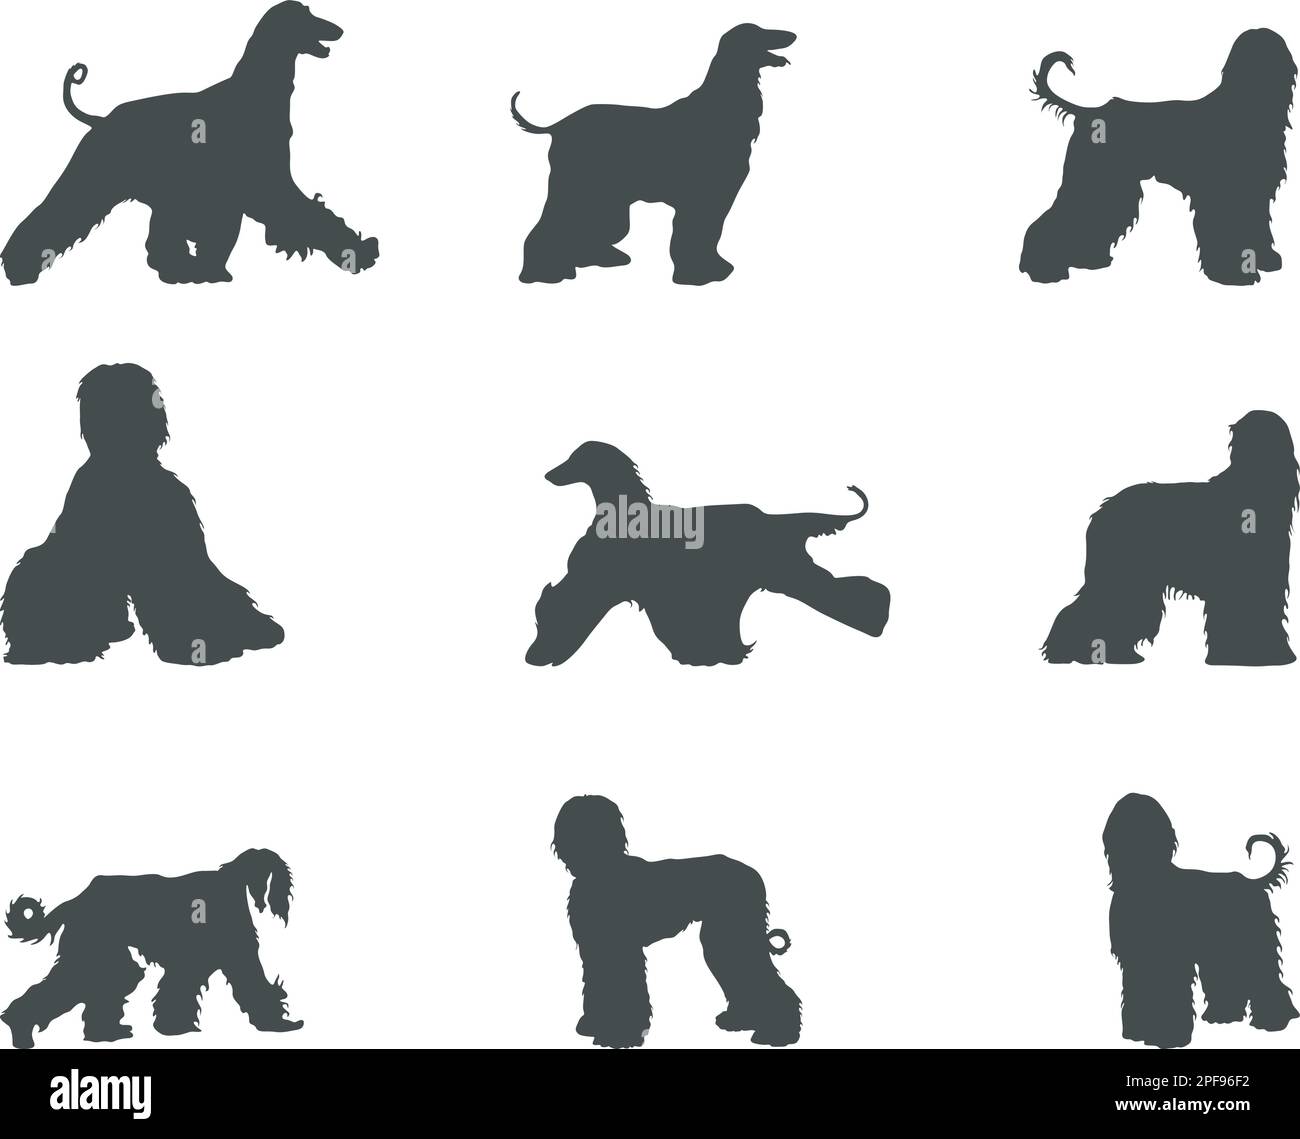 Afghanische Hunde-Silhouetten, afghanische Hunde-Silhouetten, afghanische Hunde-SVG Stock Vektor